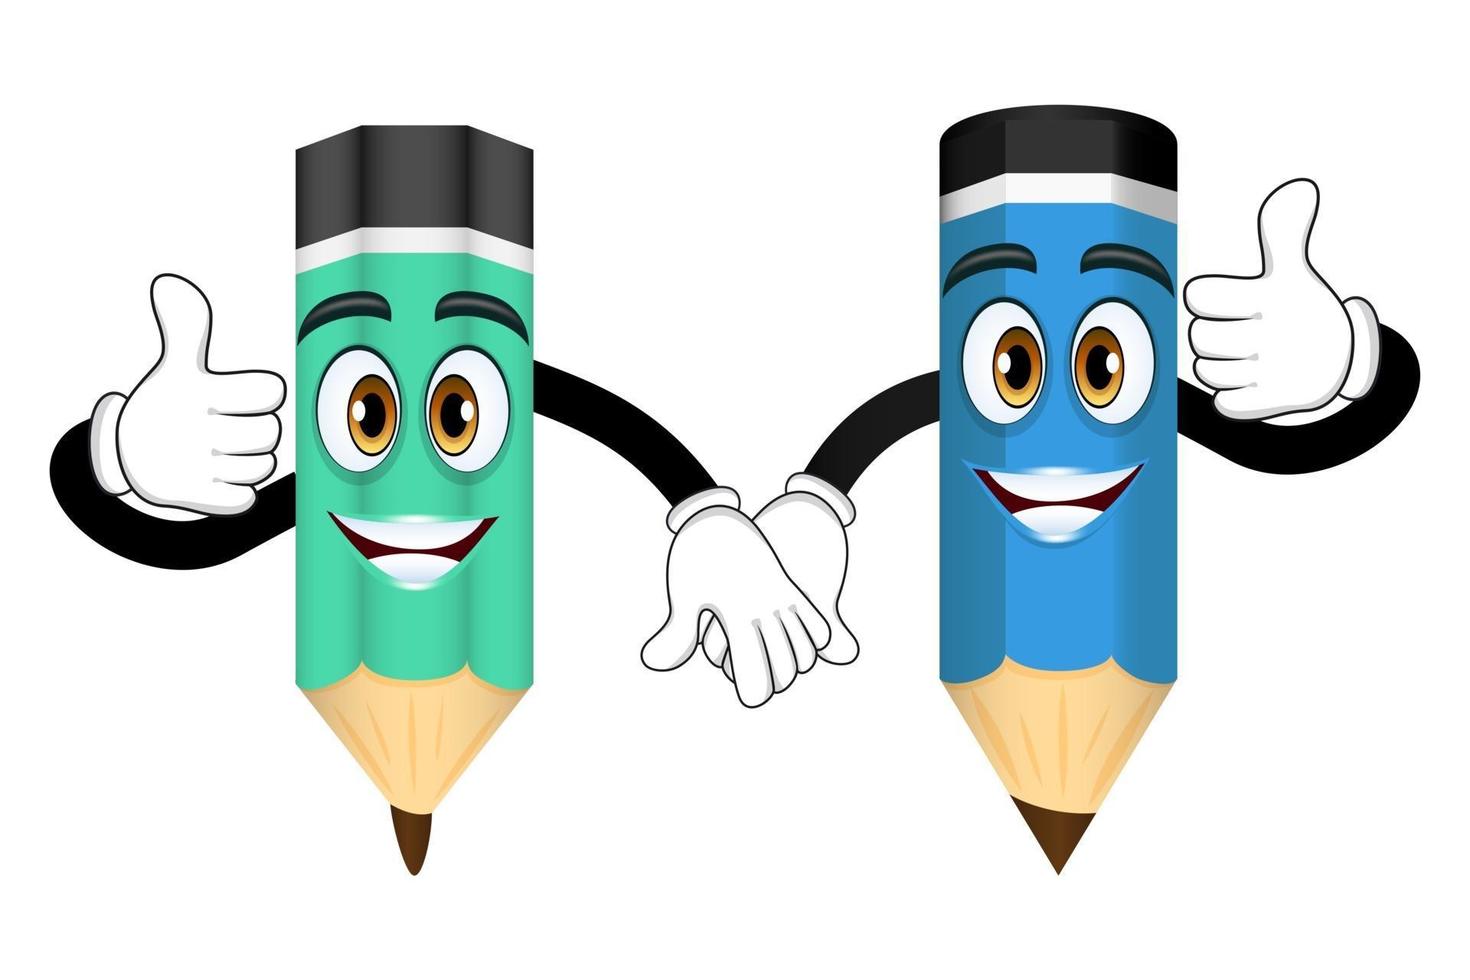 personnages de crayon mascotte debout et main dans la main isolés vecteur